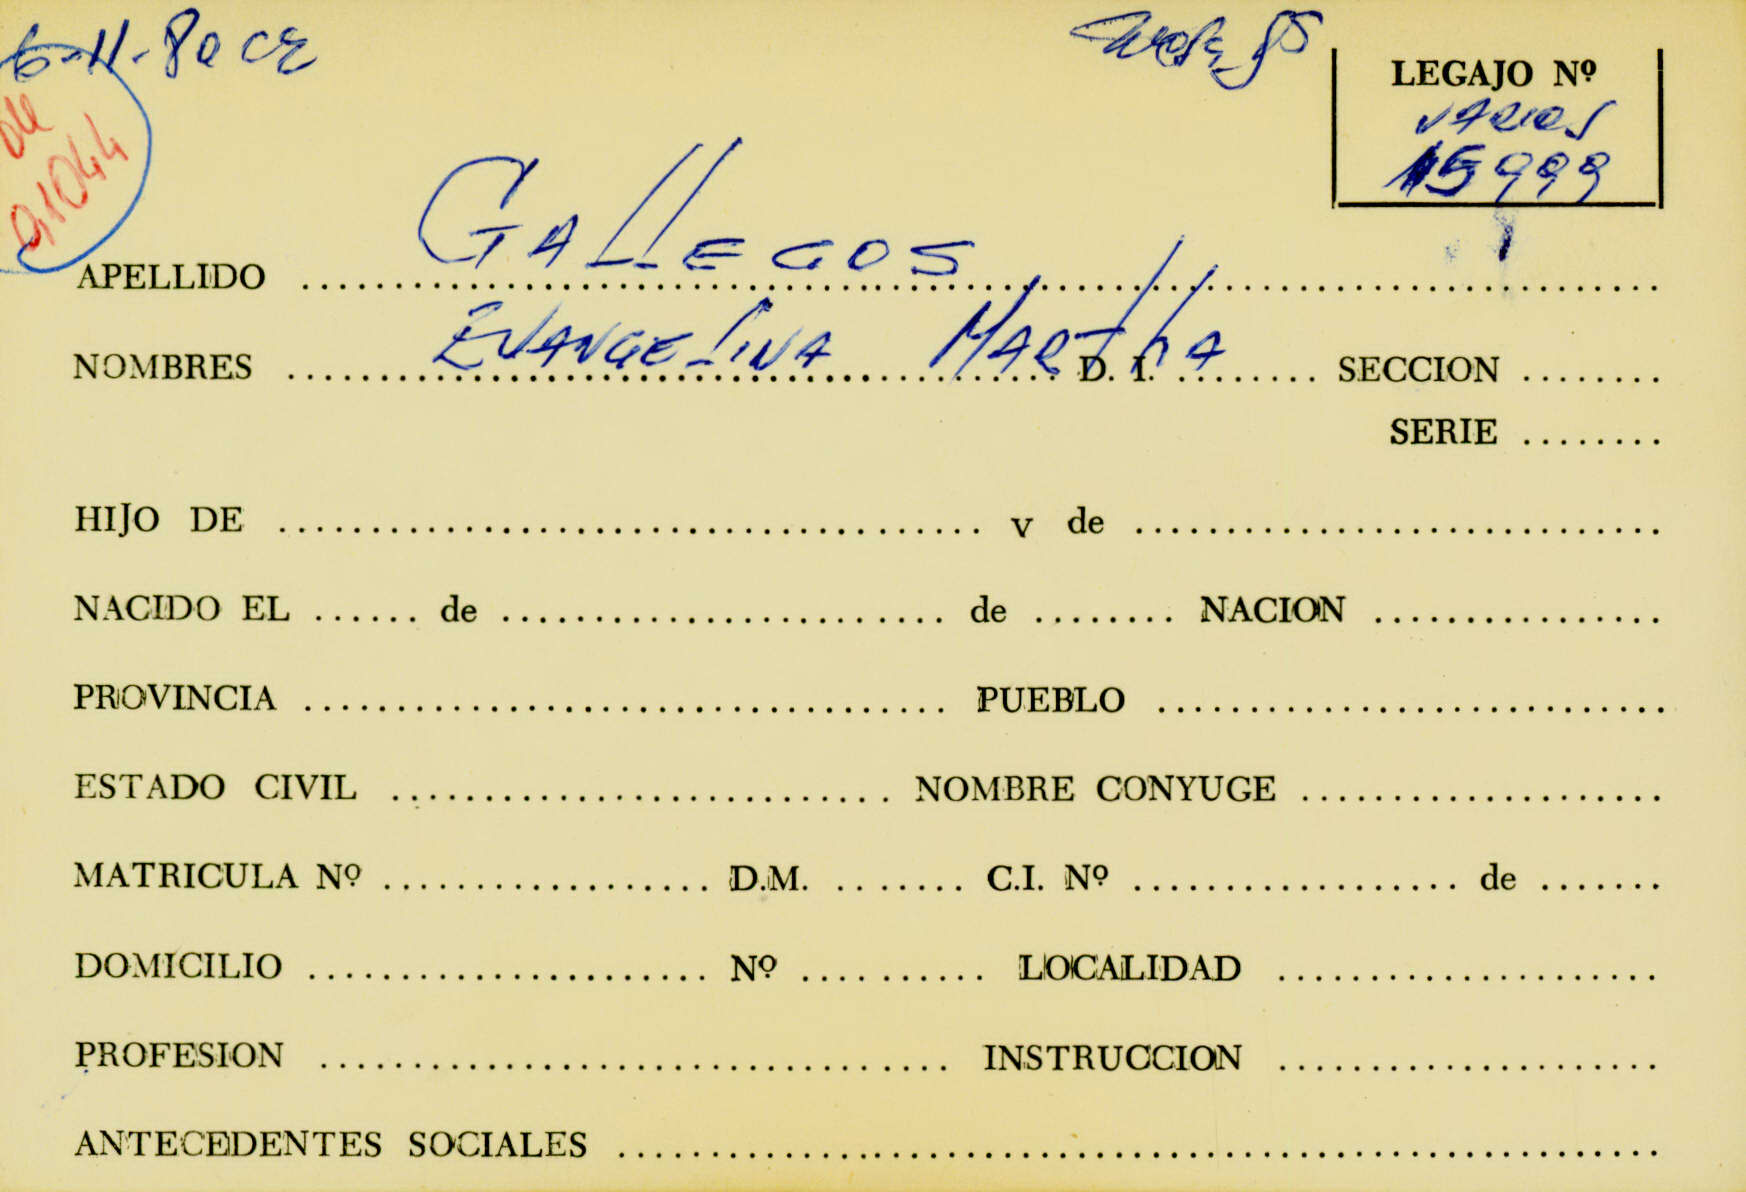 Ficha de Gallegos Evangelina Martha que remite al legajo Mesa Ds 15999. CPM-Fondo DIPPBA- Div. Cen AyF, fichero onomástico. Año 1980.